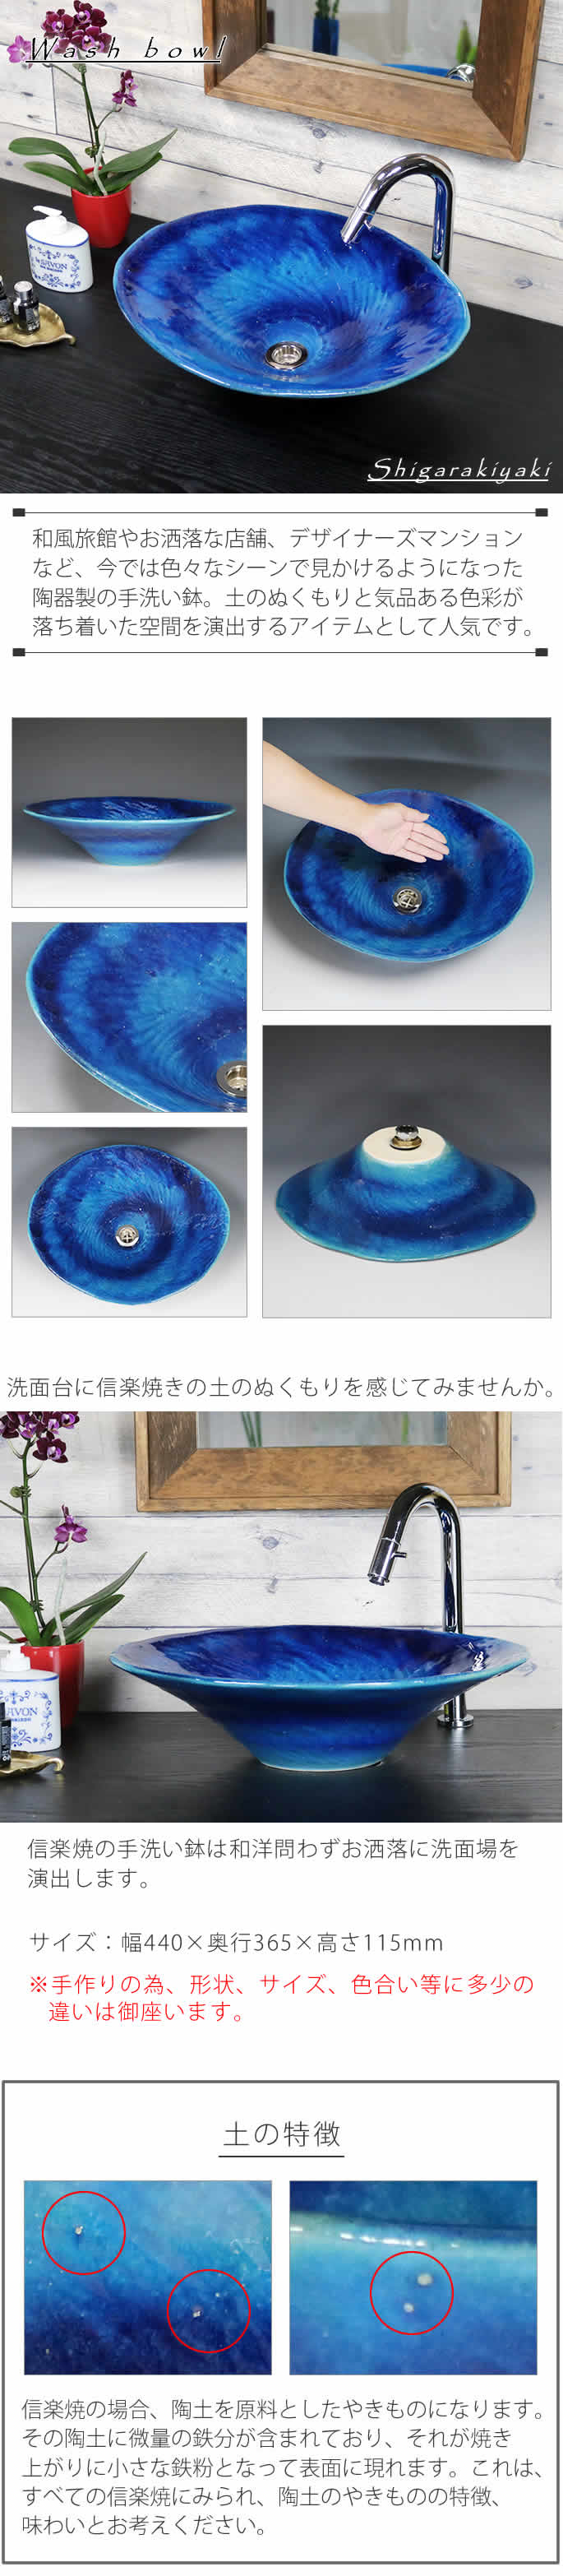 魅力的な価格 ruru信楽焼 3カラーから選べる 洗面ボール手洗い鉢 洗面鉢 洗面器 洗面シンク 洗面?